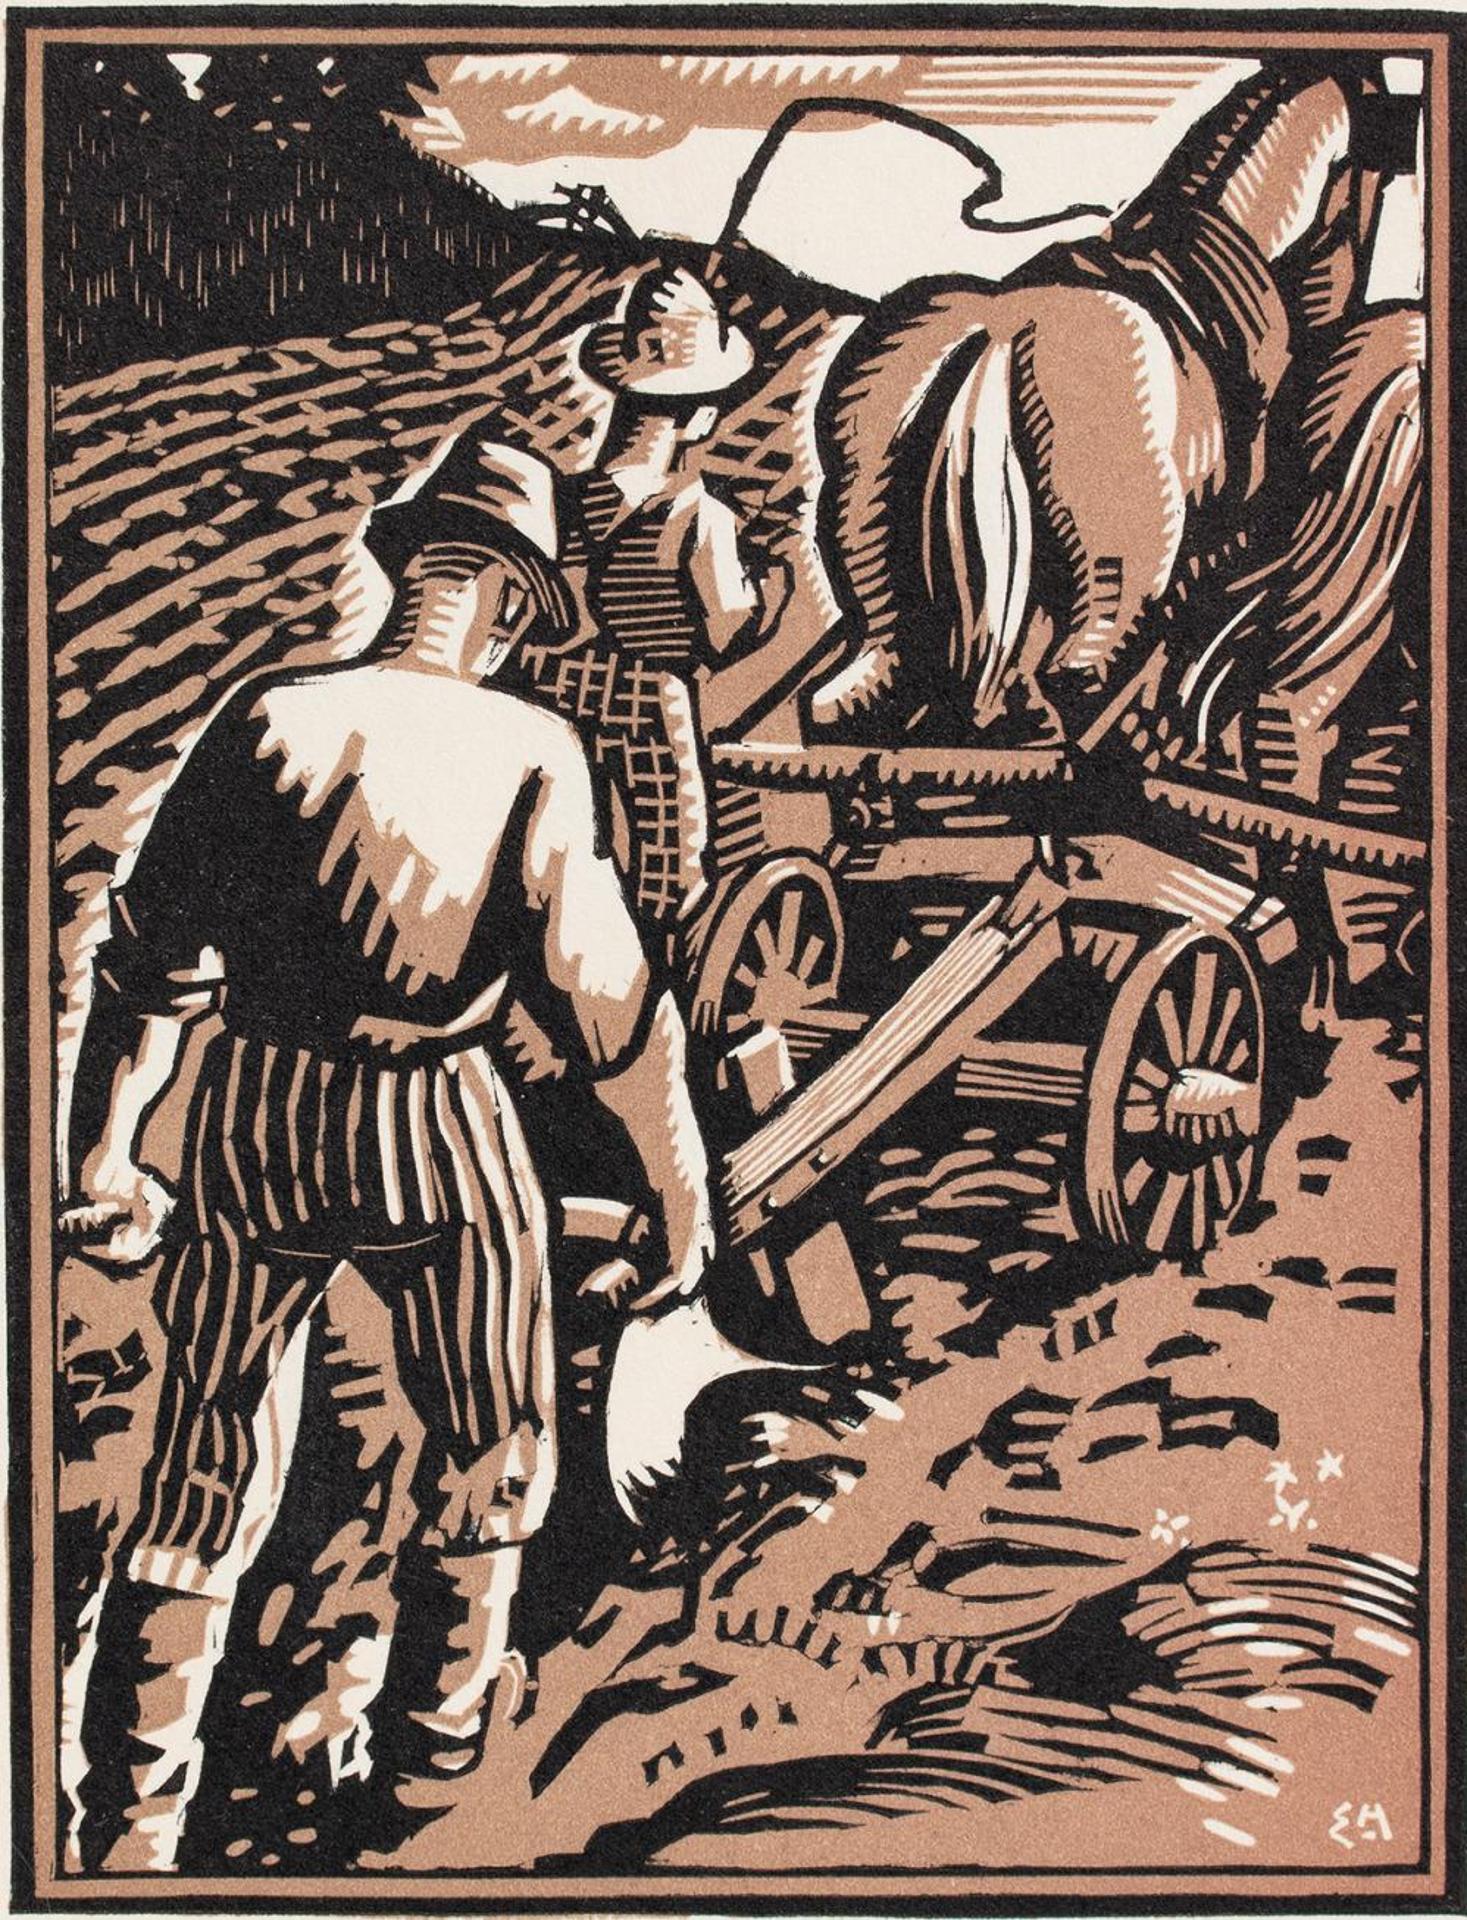 Edwin Headley Holgate (1892-1977) - Untitled - Plowing the Field